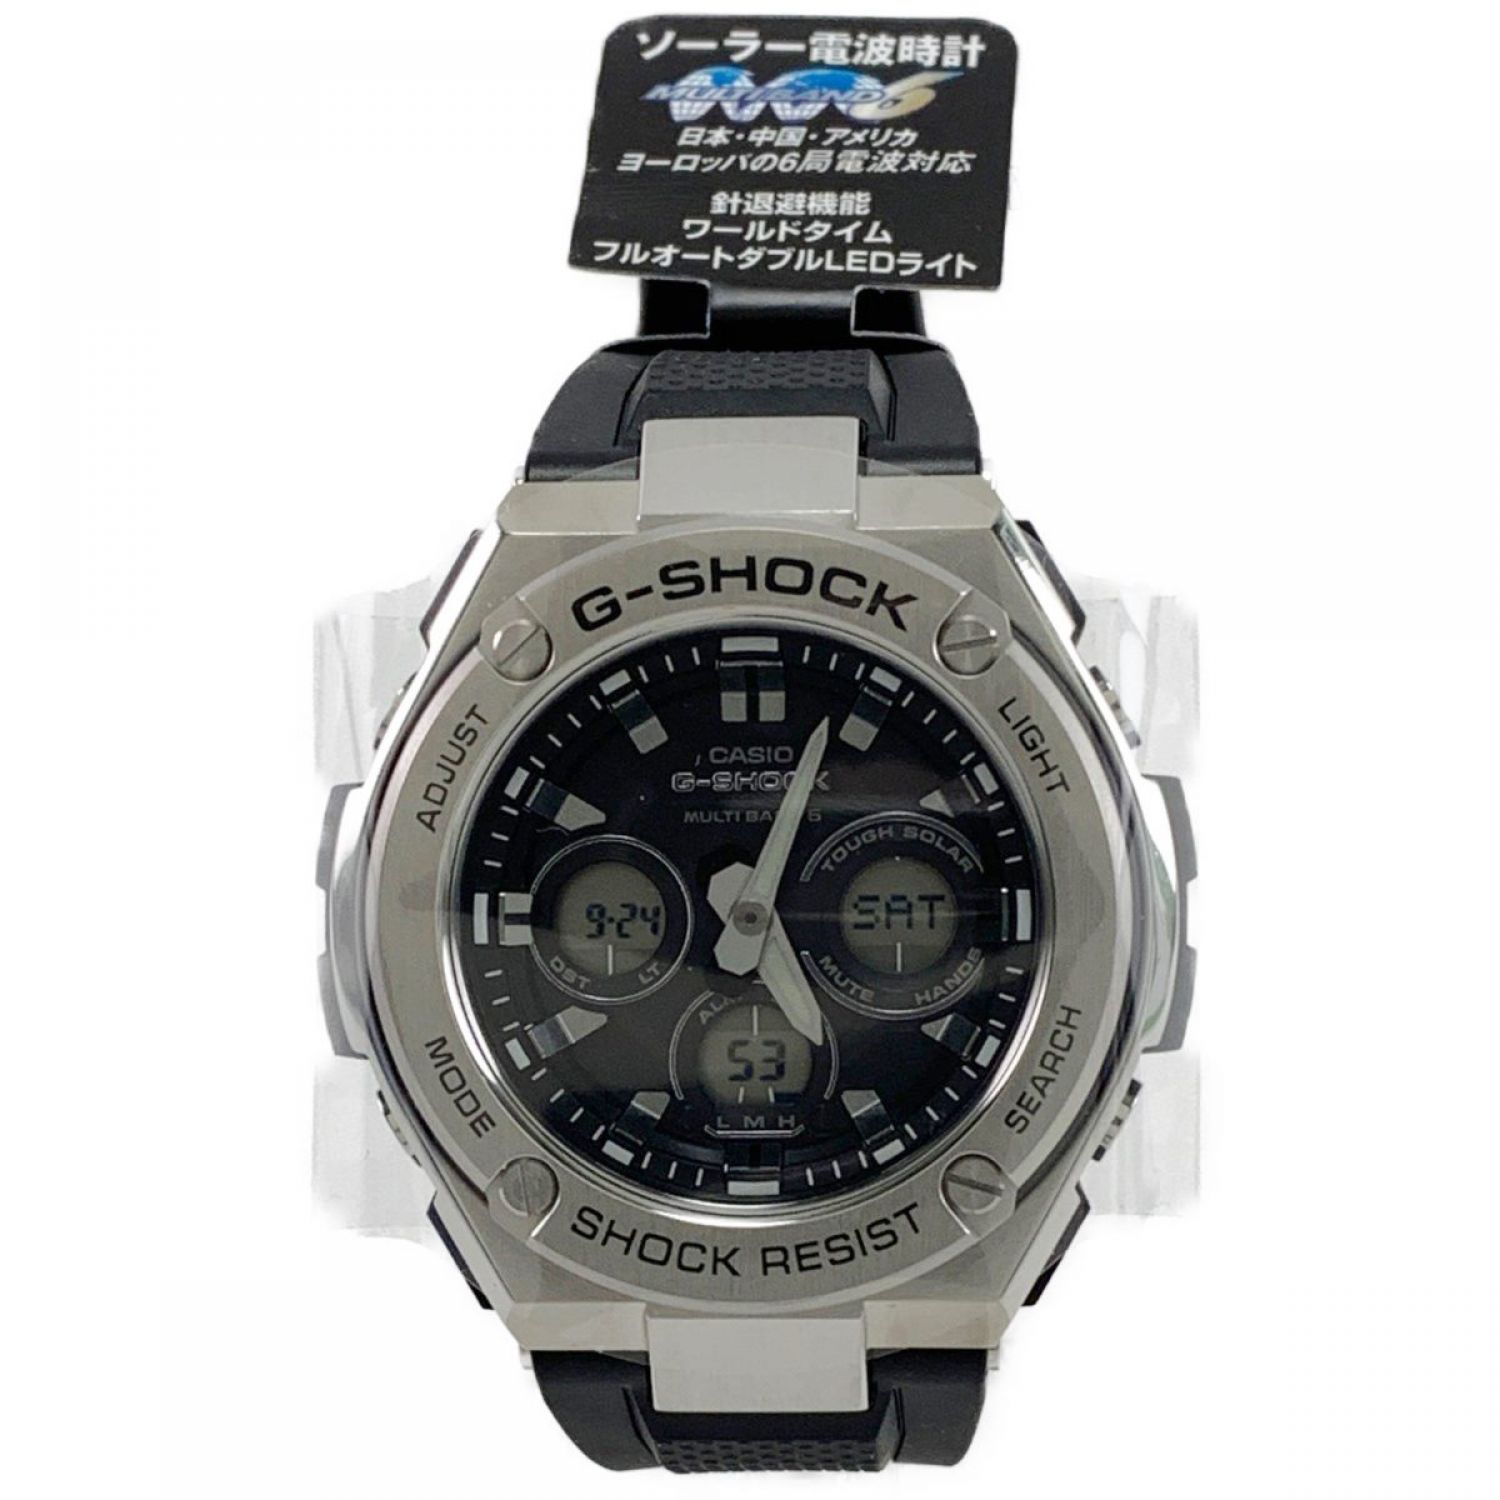 中古】 CASIO カシオ G-SHOCK G-STEEL メンズ 腕時計 GST-W310 Aランク 